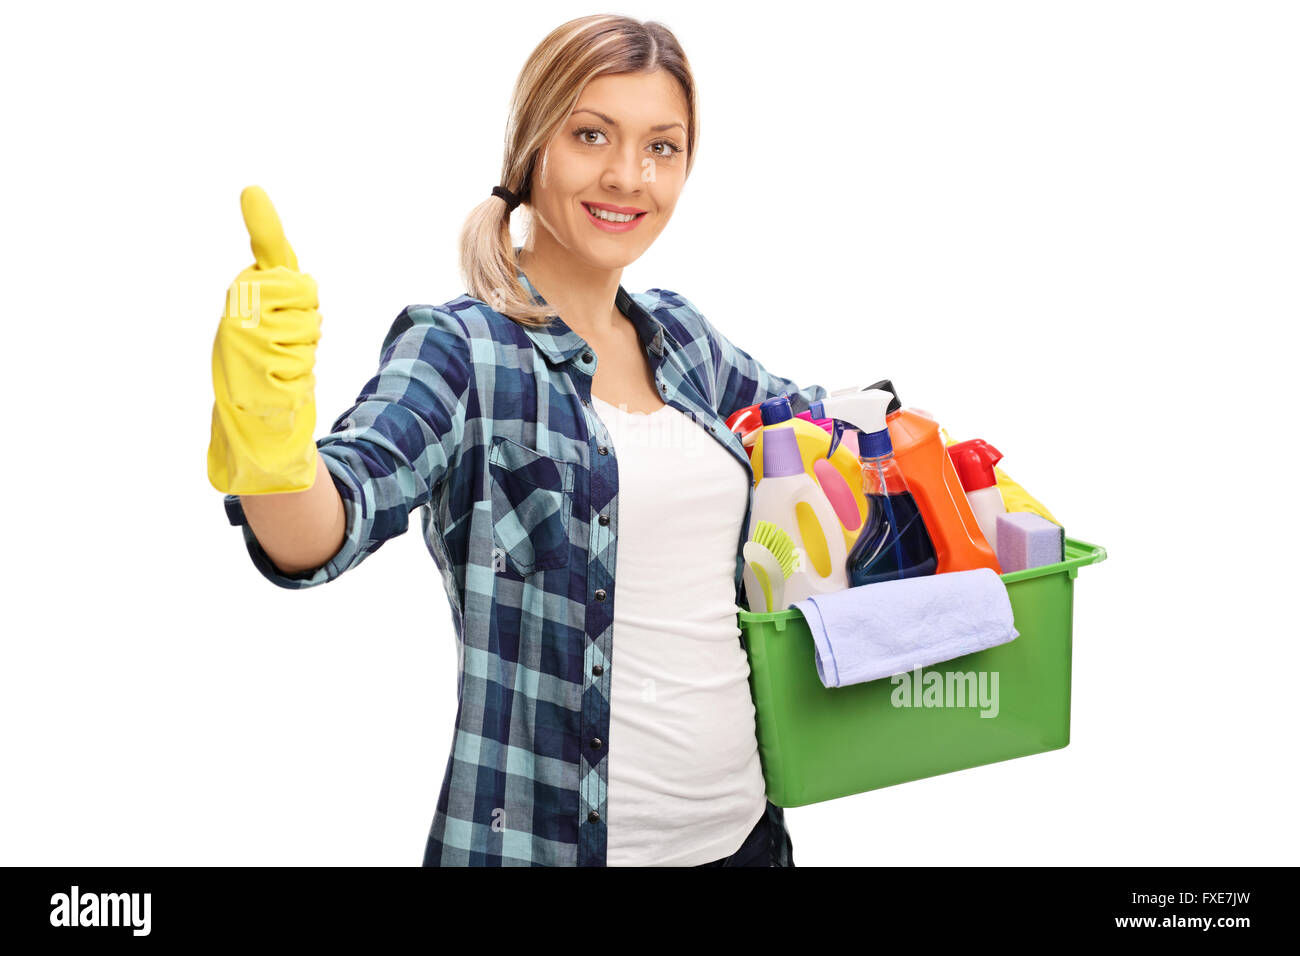 Allegro ragazza con un mazzetto di prodotti di pulizia e dando un pollice in alto isolato su sfondo bianco Foto Stock